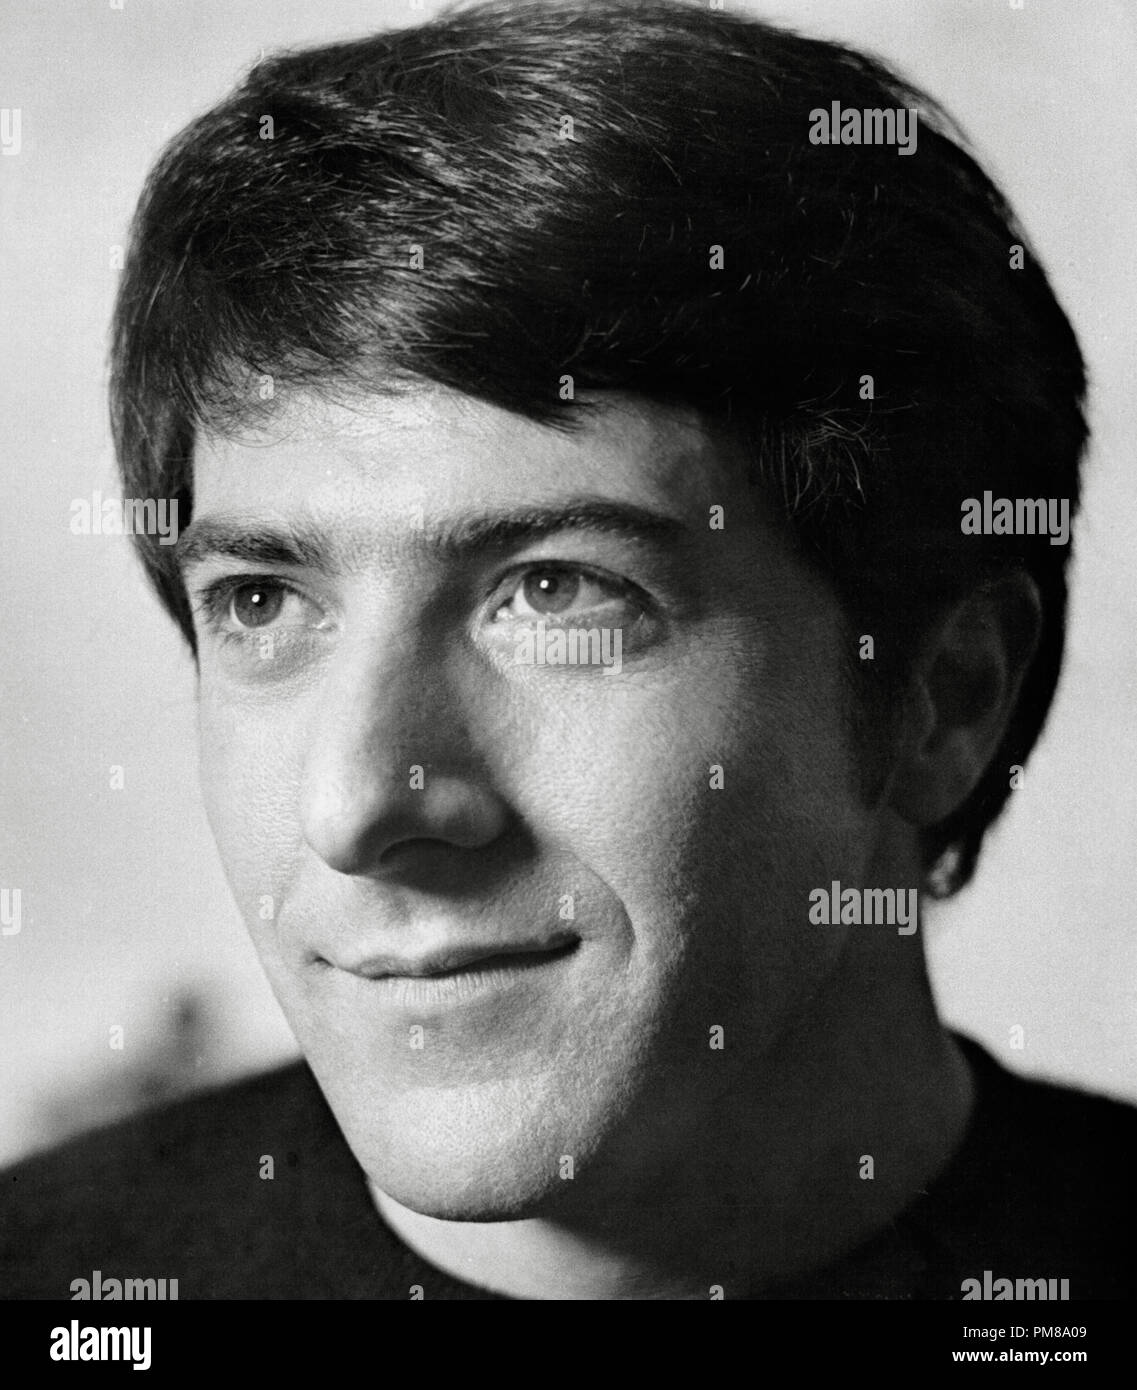 Studio Werbung noch: Dustin Hoffman' John und Mary' 1969 Twentieth Century Fox Datei Referenz # 31780 378 Stockfoto